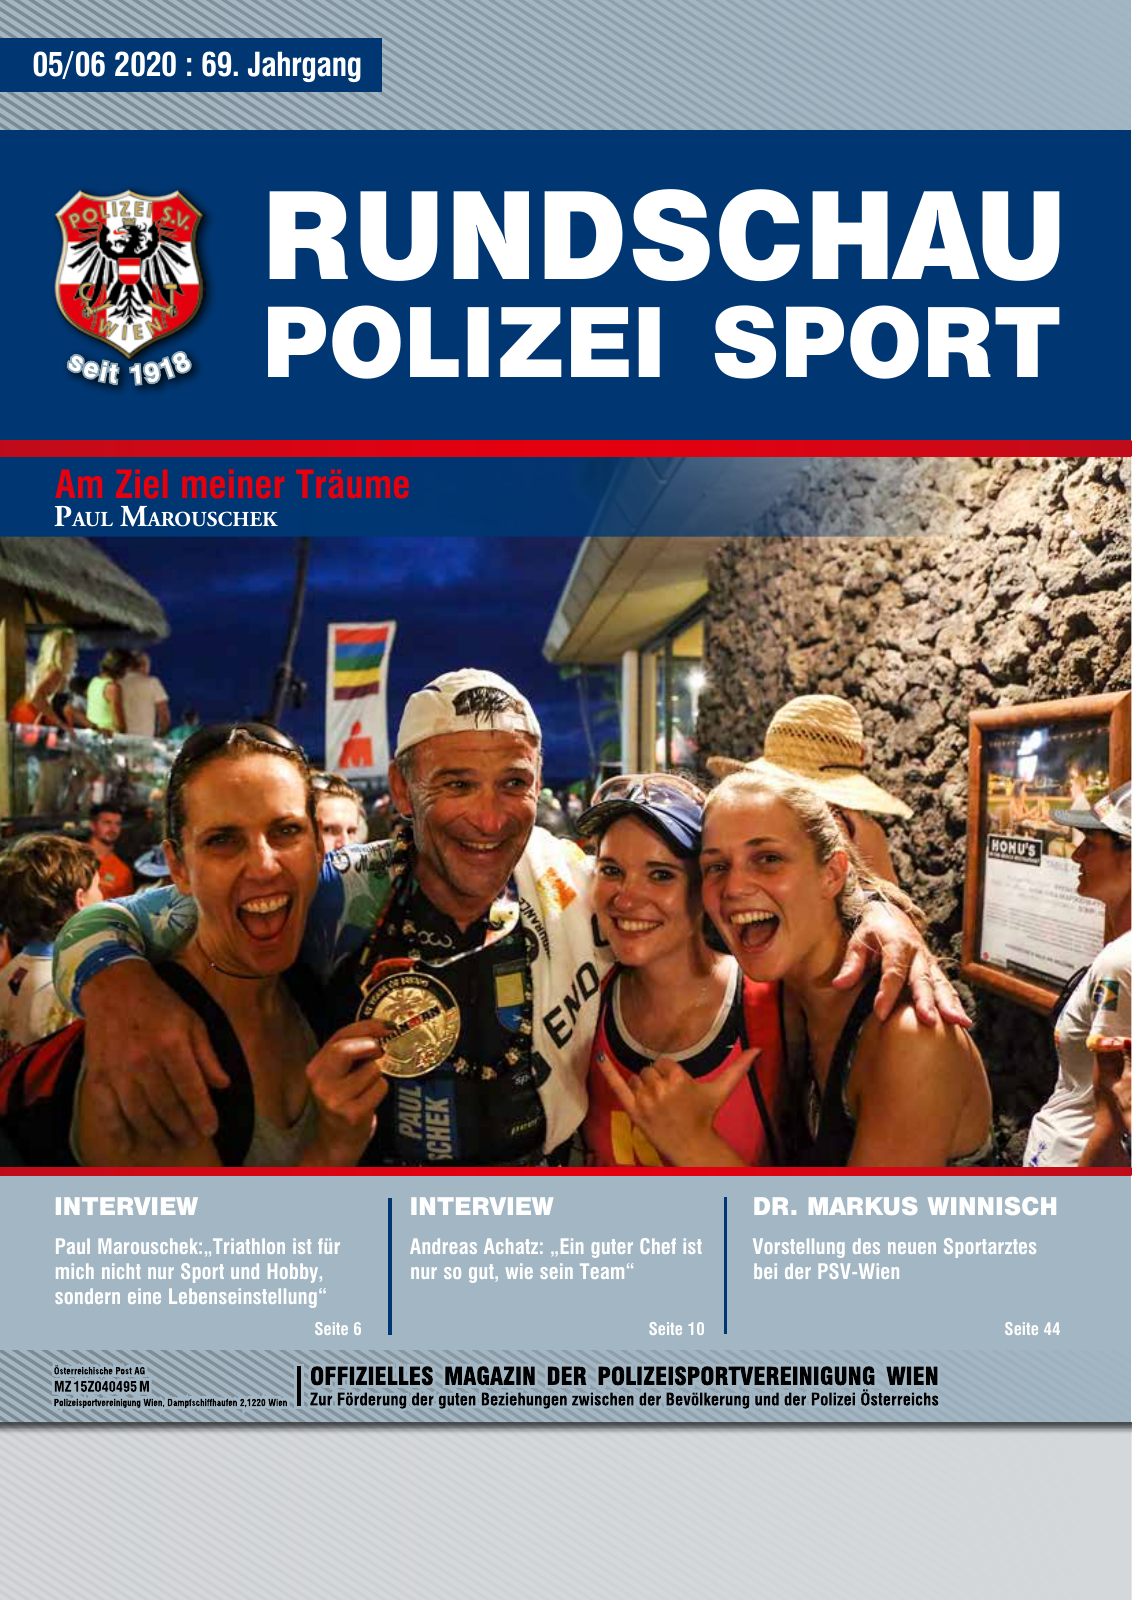 Vorschau Rundschau Polizei Sport 05-06/2020 Seite 1